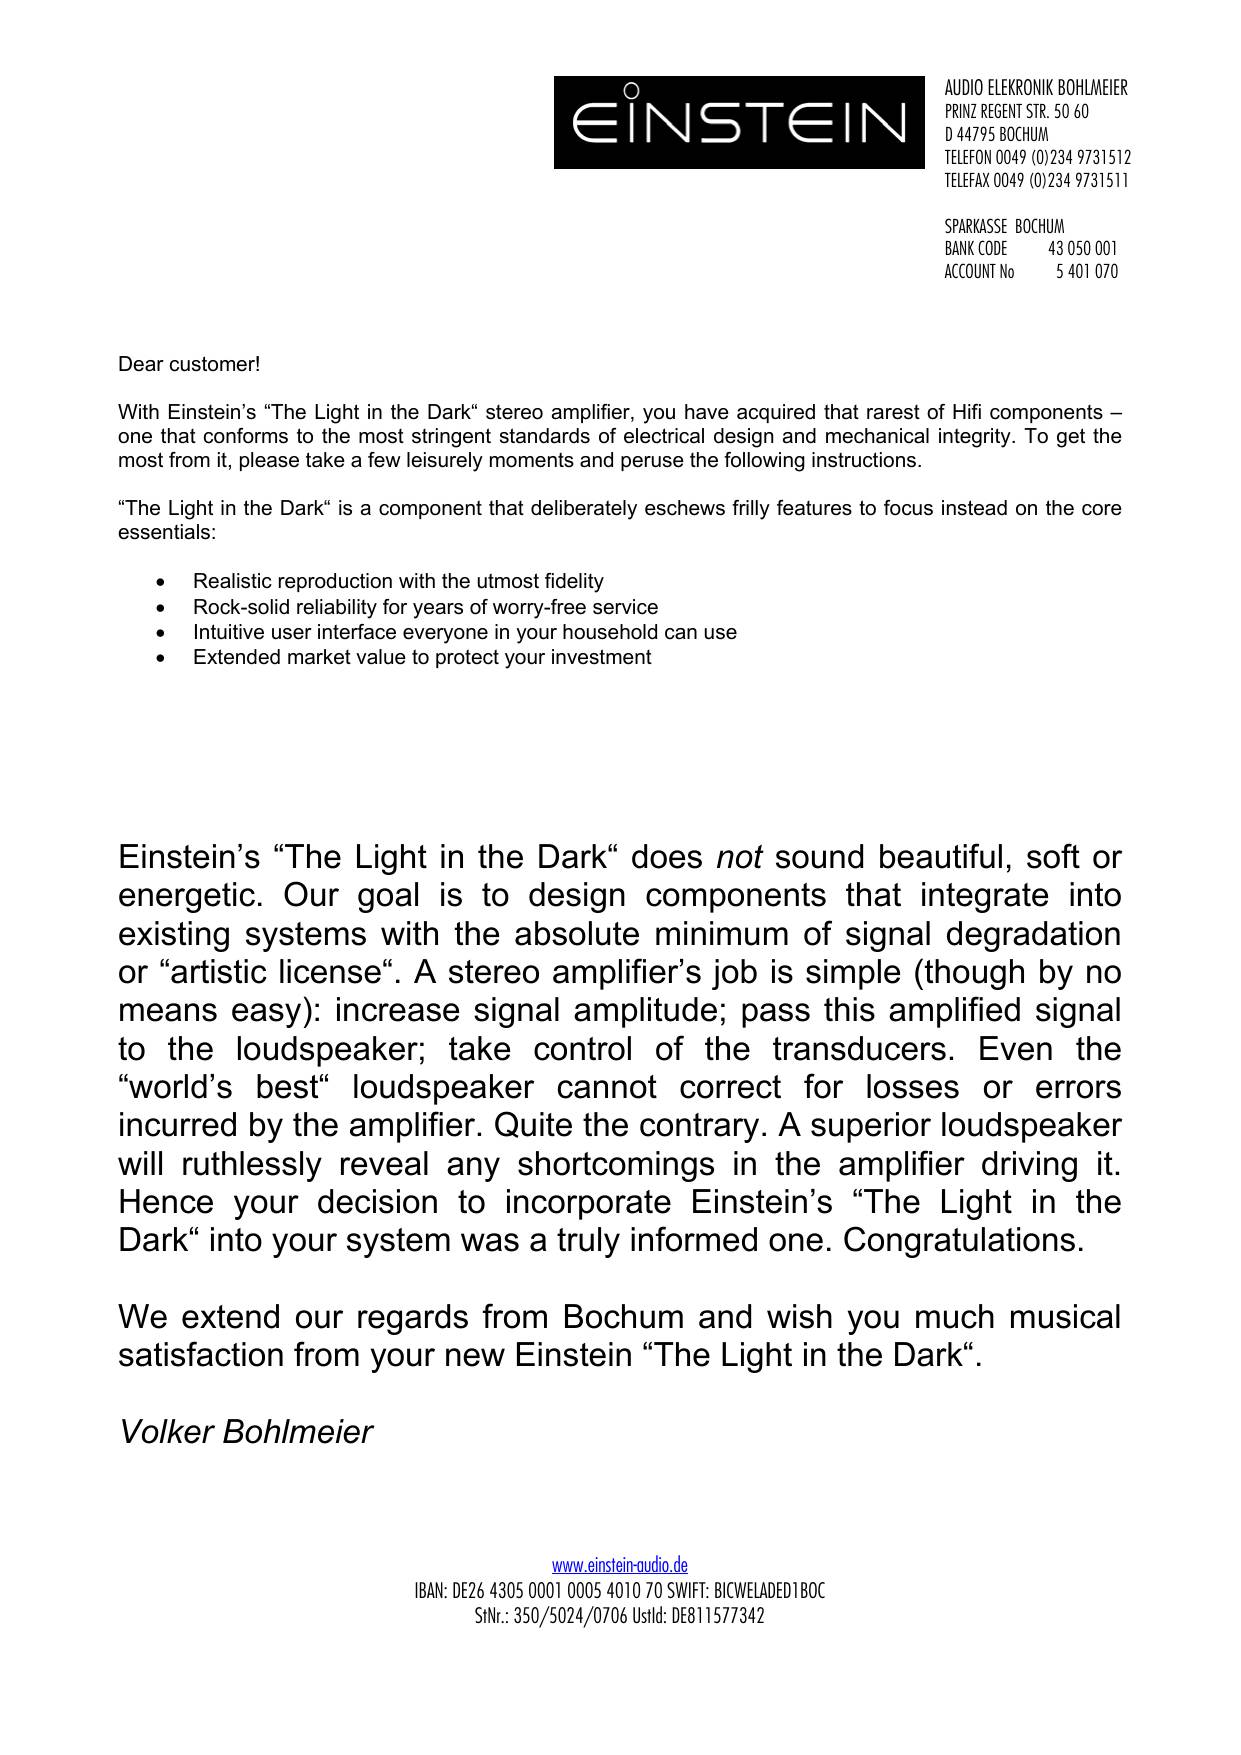 Einstein The Light in The Dark (Ltd)